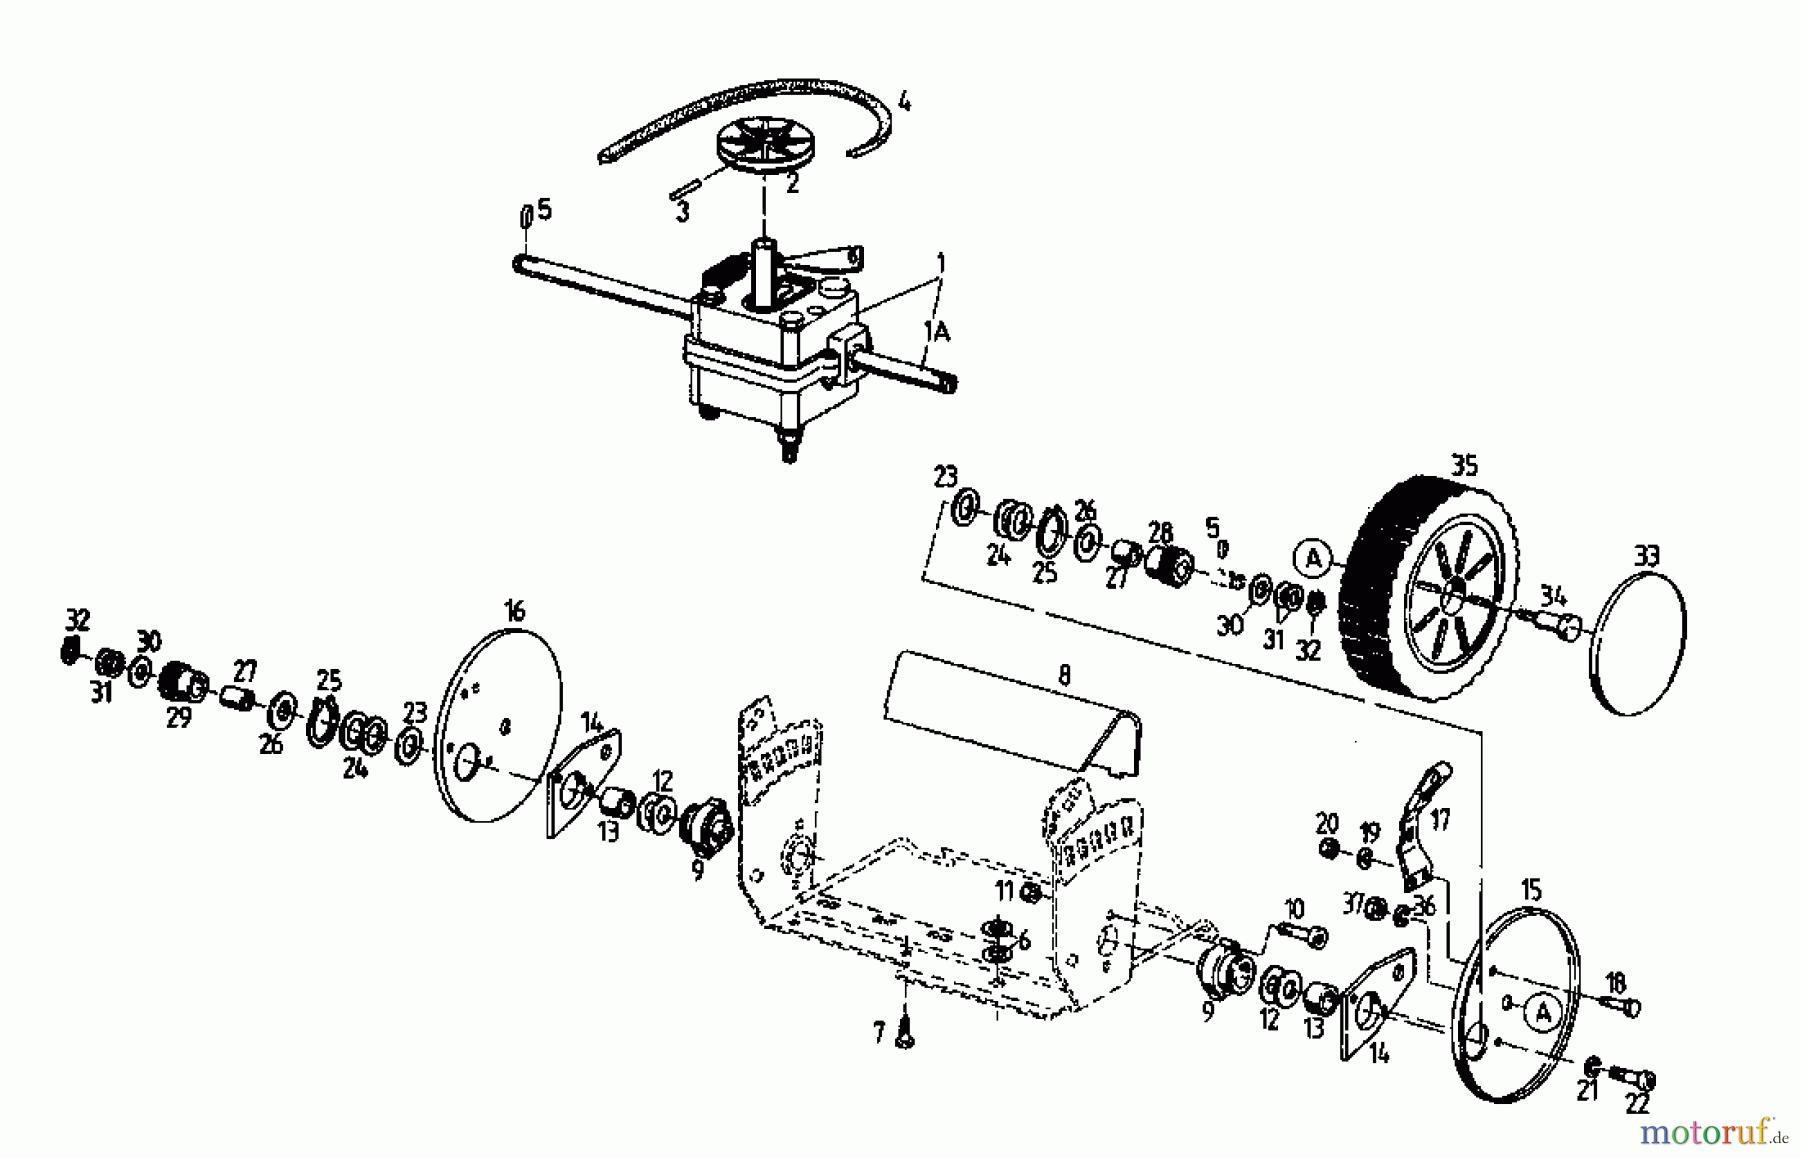  Floraself Motormäher mit Antrieb 3746 BLR 04033.02  (1995) Getriebe, Räder, Schnitthöhenverstellung